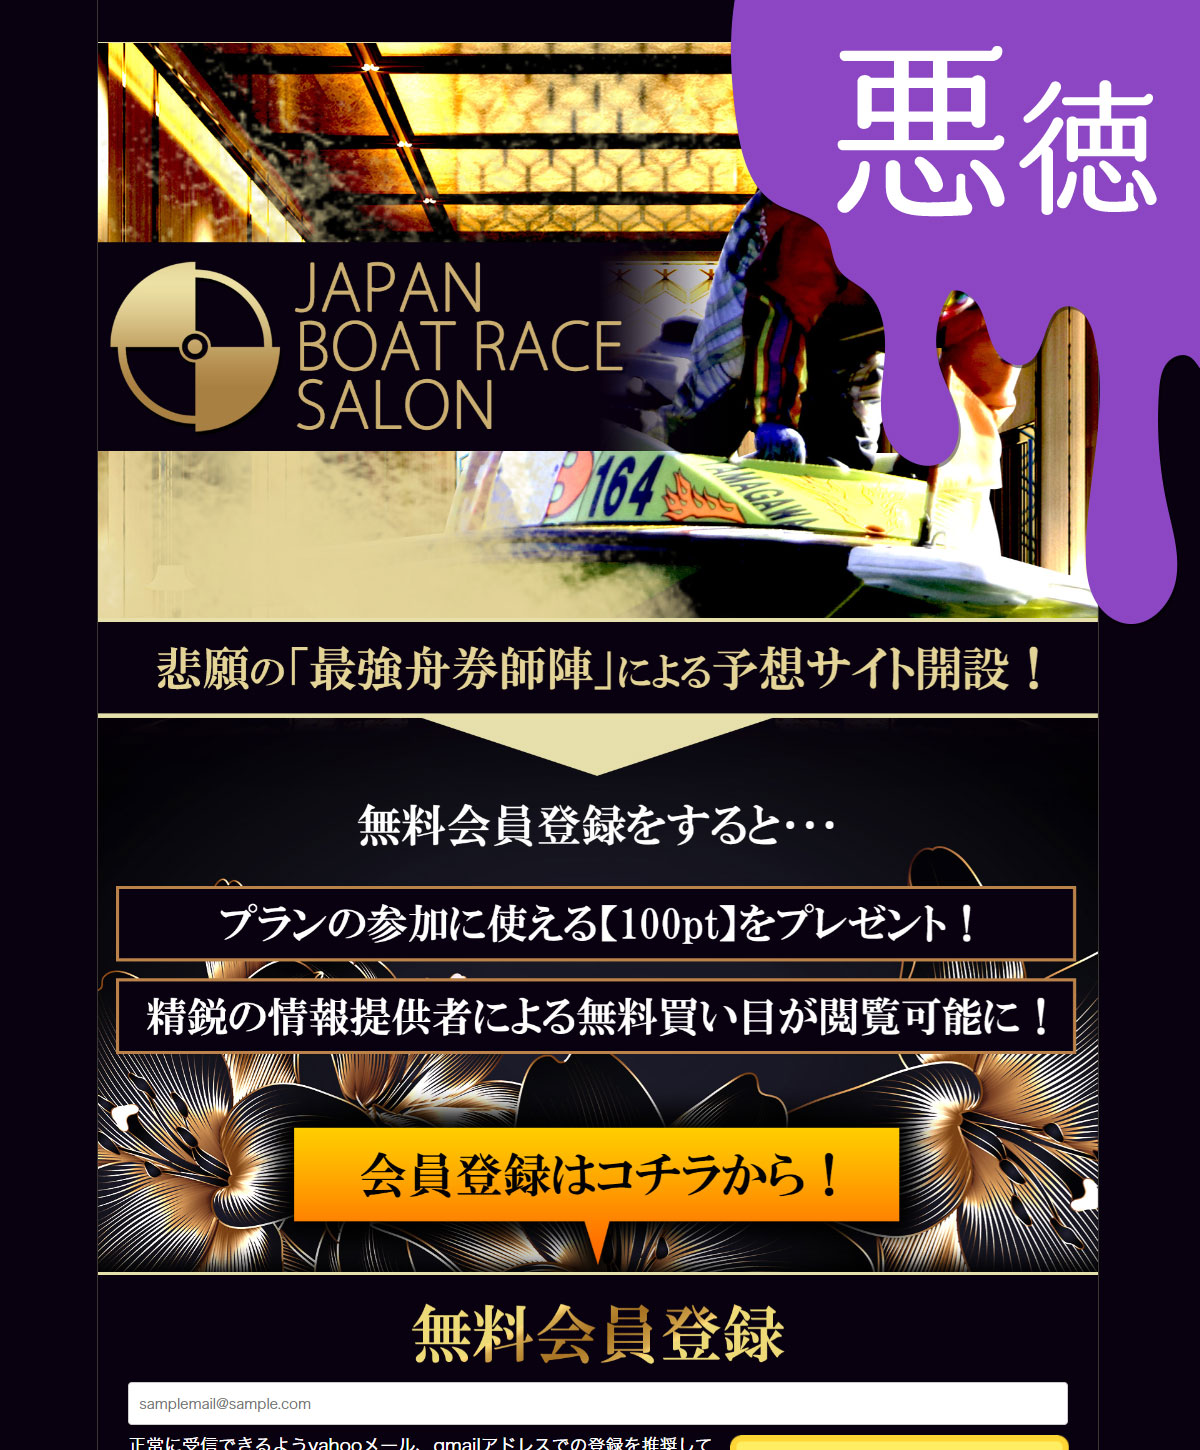 悪徳 JAPAN BOAT RACE SALON(ジャパンボートレースサロン) 競艇予想サイトの中でも優良サイトなのか、悪徳サイトかを口コミなどからも検証